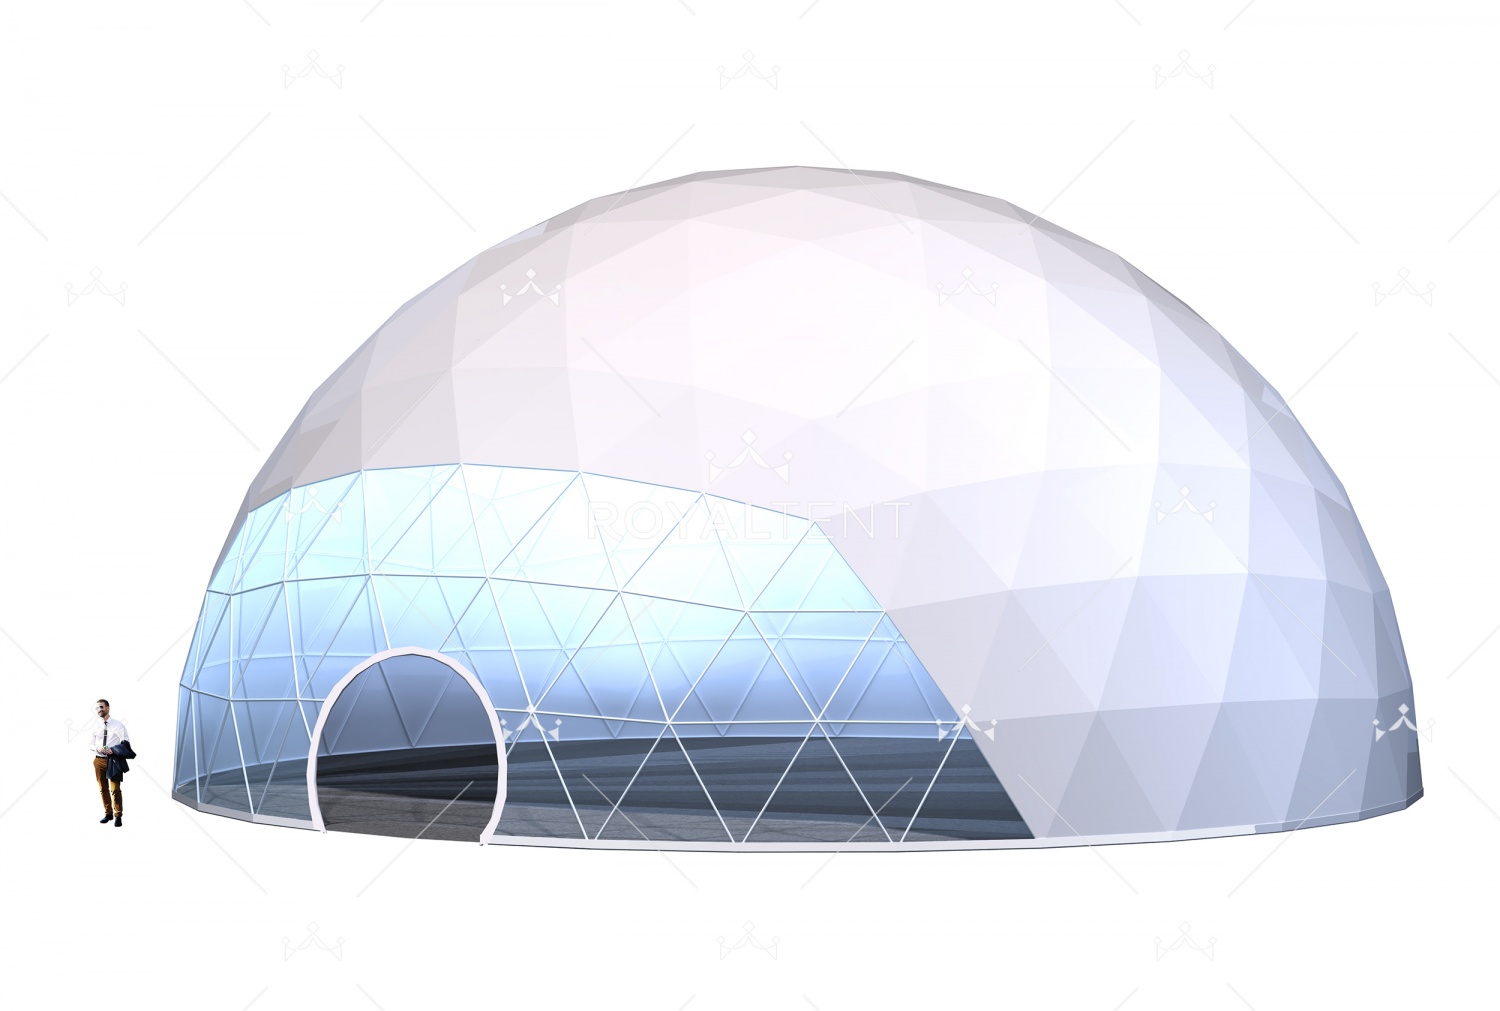 Актуальность приобретения сферических шатров для event-агентств